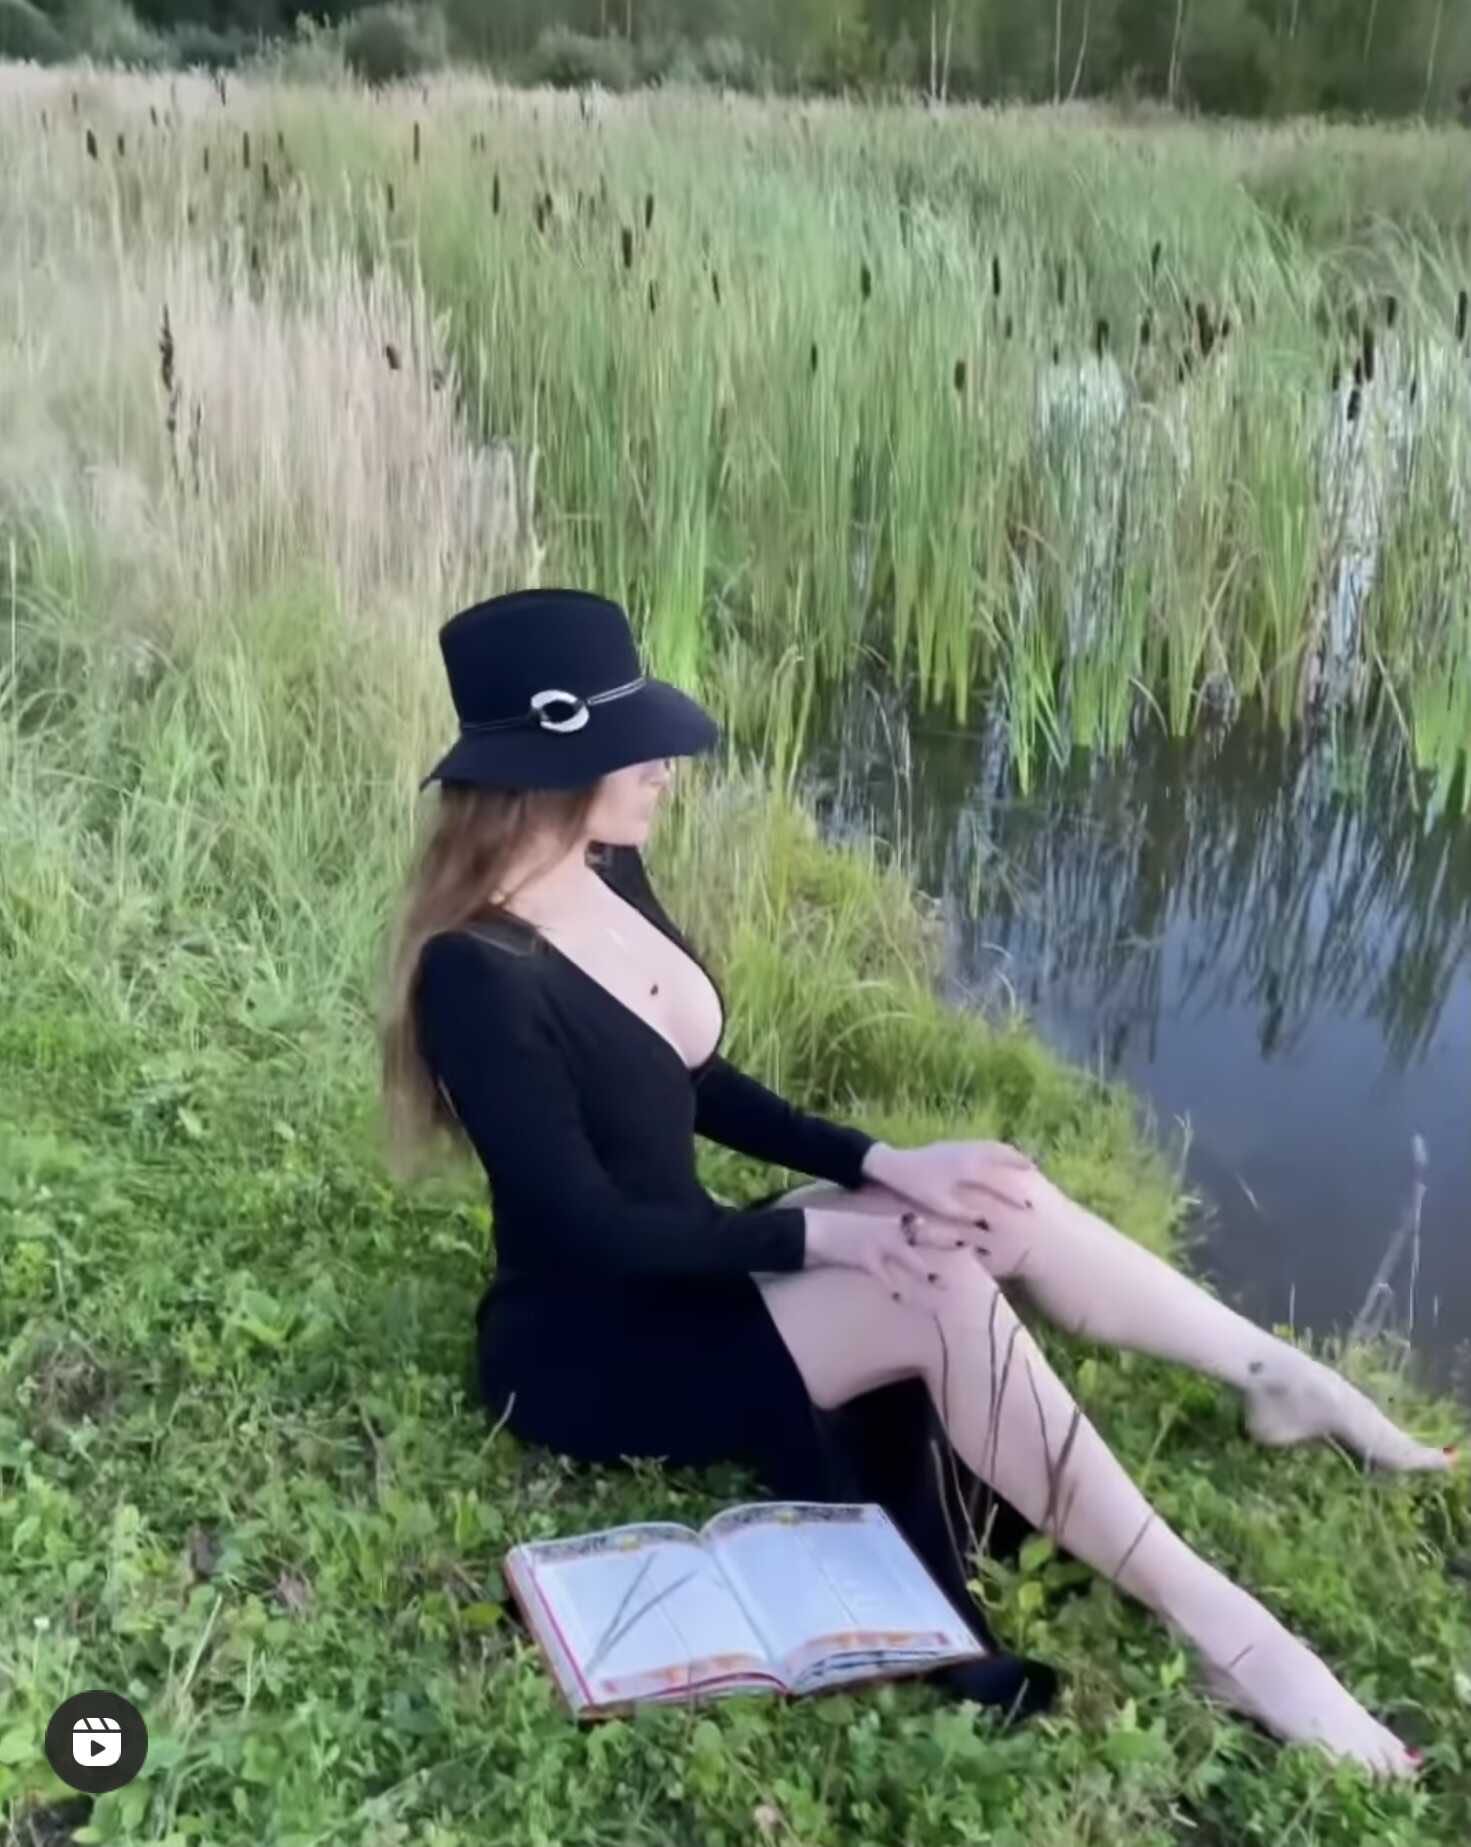 Алена Водонаева, вывалив грудь и демонстрируя нижнее бельё, пыталась соблазнить рыбаков Подмосковья, сидя в камышах